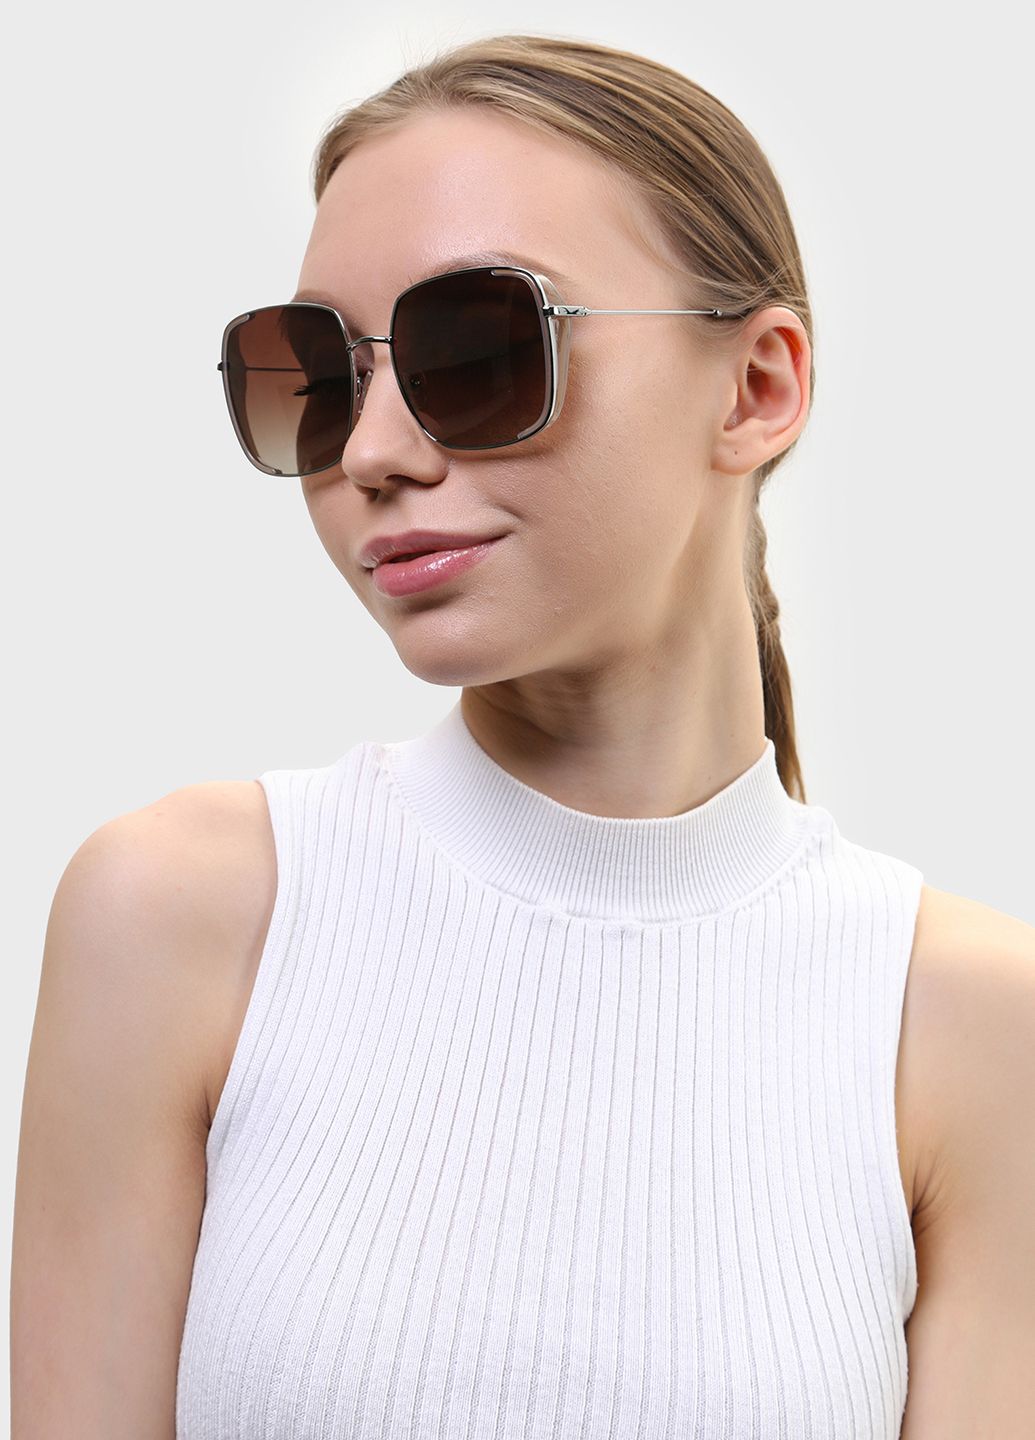 Купить Женские солнцезащитные очки Katrin Jones с поляризацией KJ0852 180049 - Бежевый в интернет-магазине